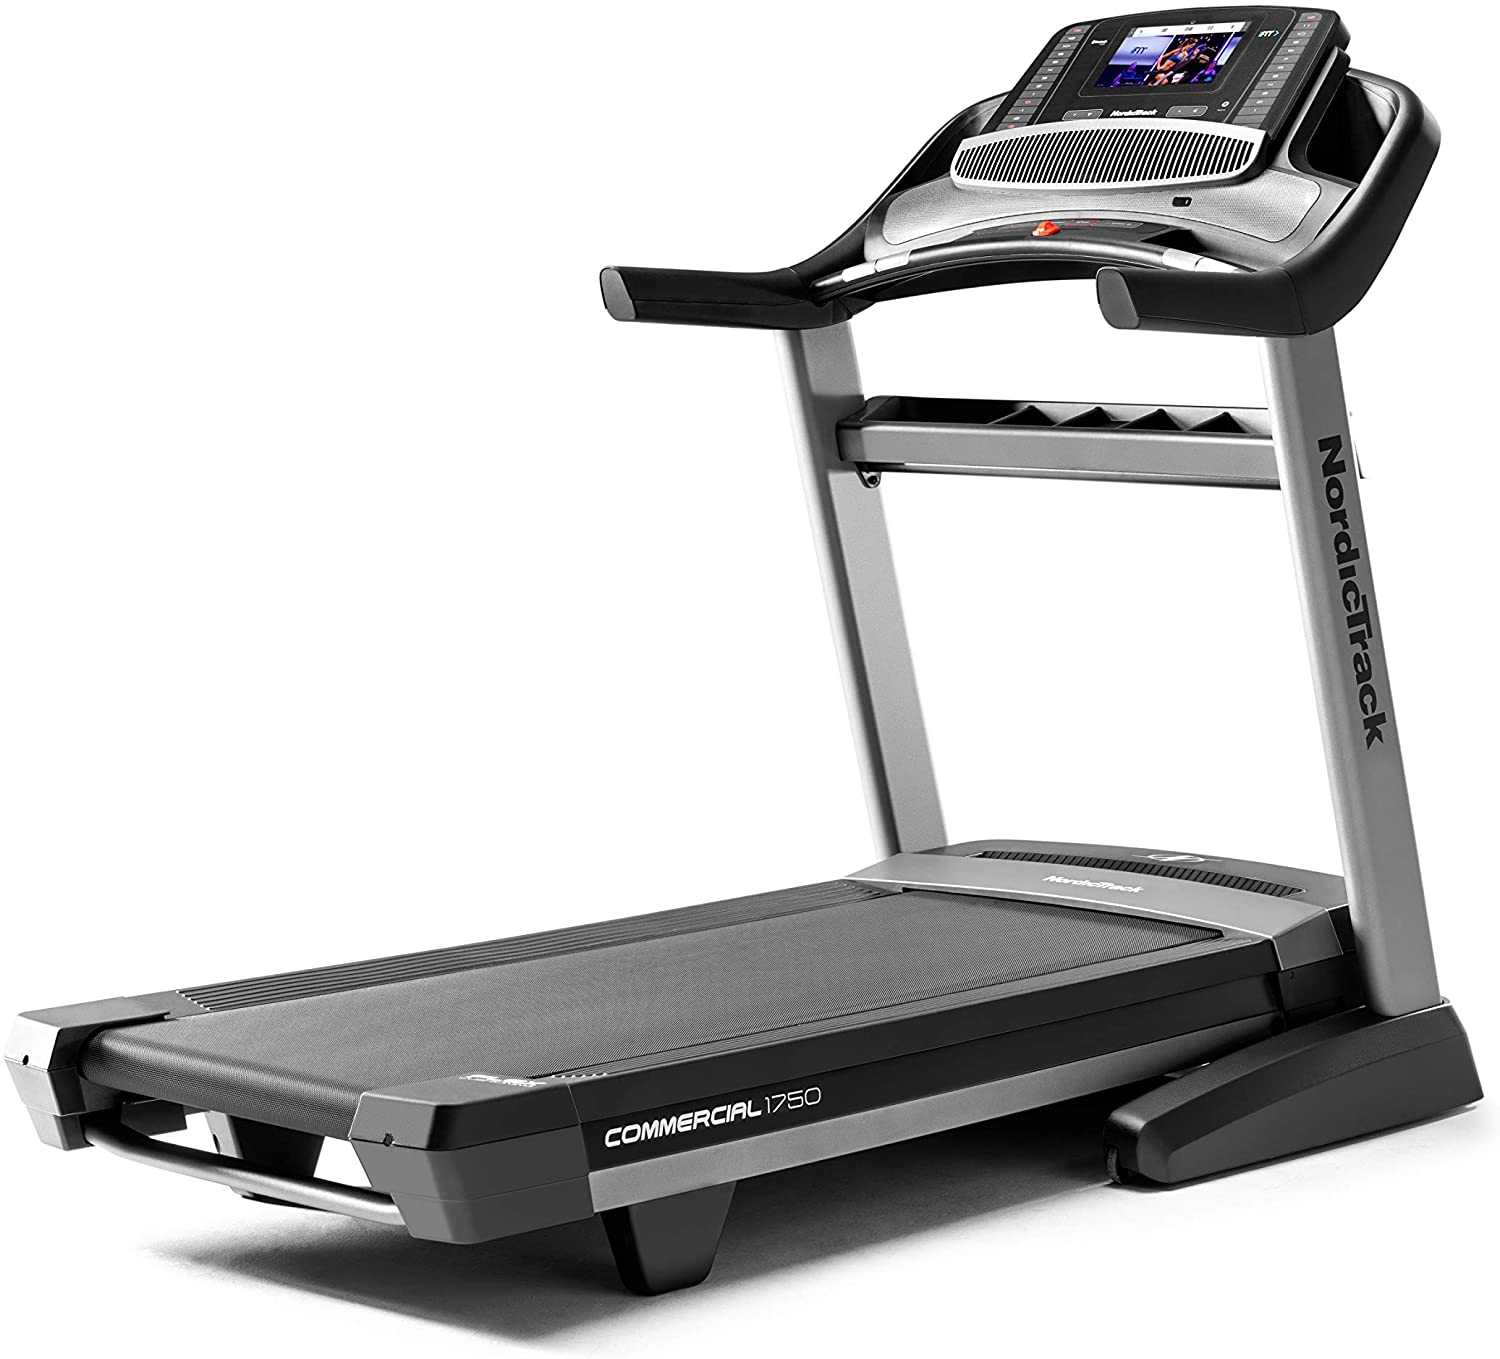 How Fast Do Treadmills Go?